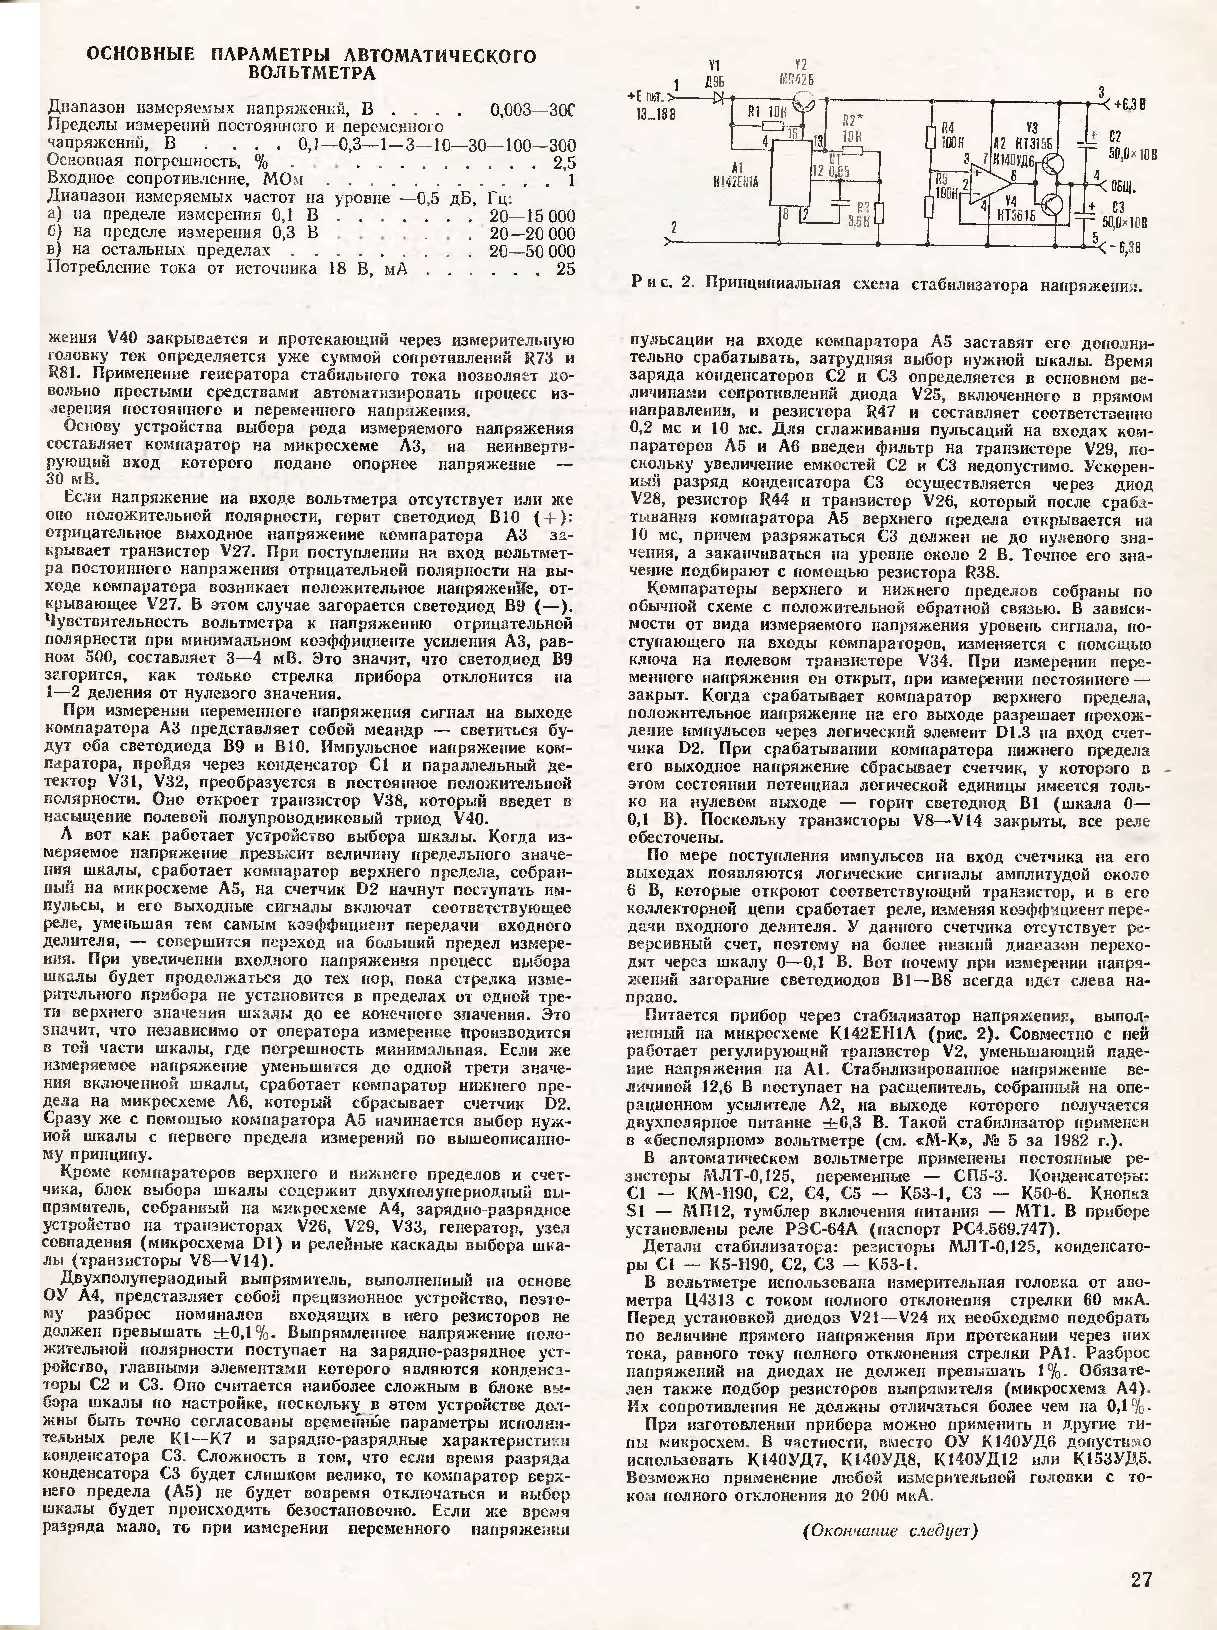 МК 10, 1983, 27 c.